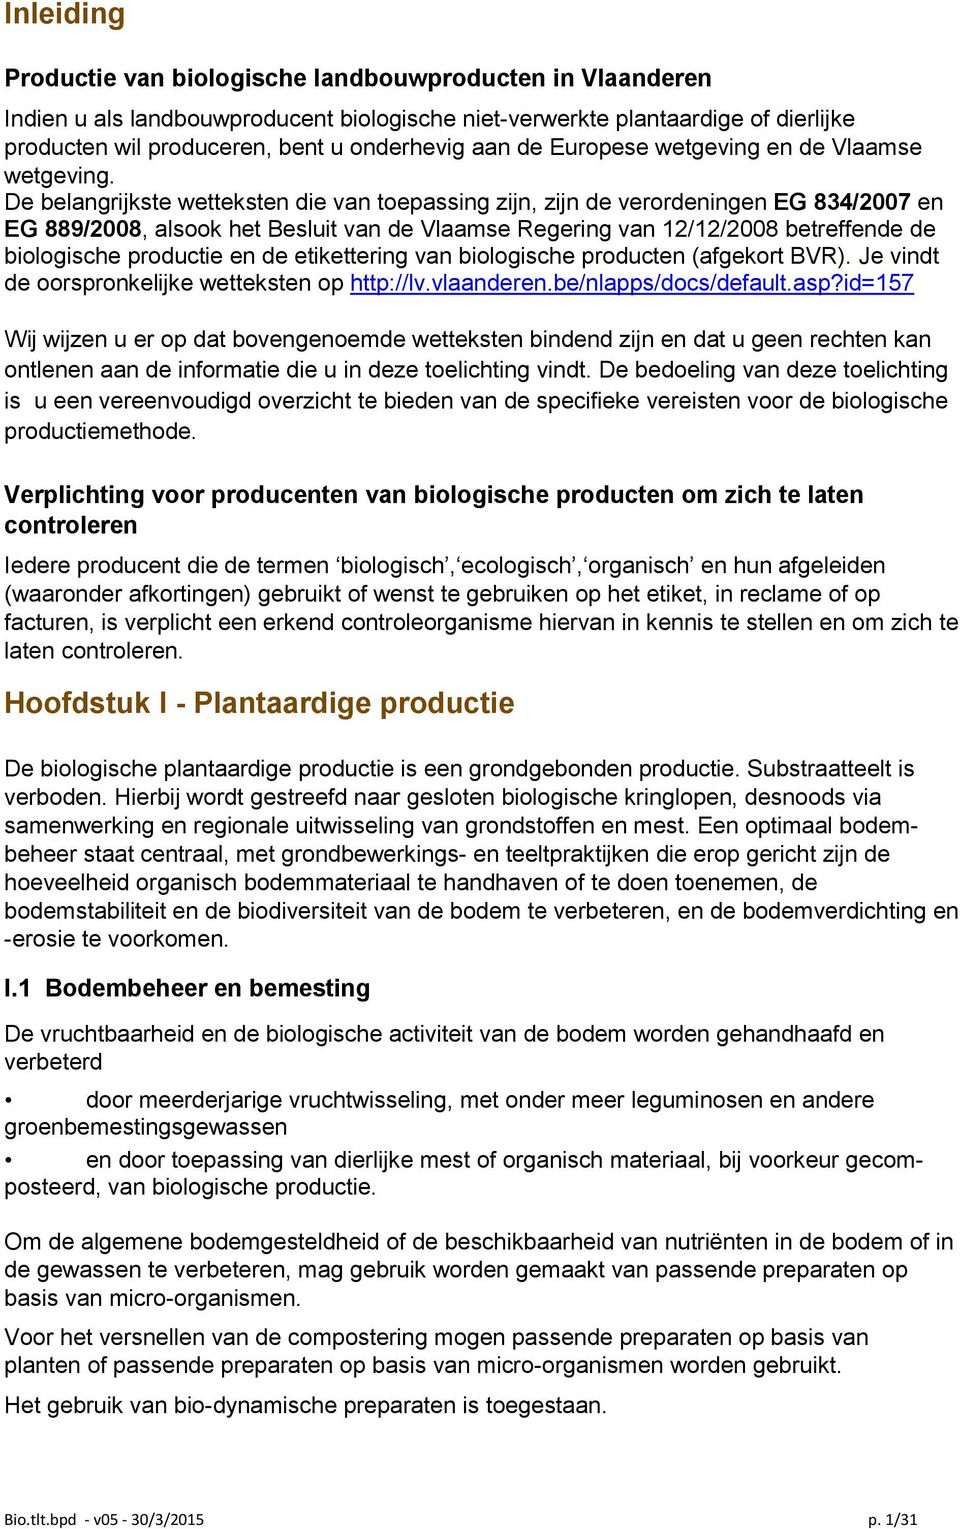 De belangrijkste wetteksten die van toepassing zijn, zijn de verordeningen EG 834/2007 en EG 889/2008, alsook het Besluit van de Vlaamse Regering van 12/12/2008 betreffende de biologische productie